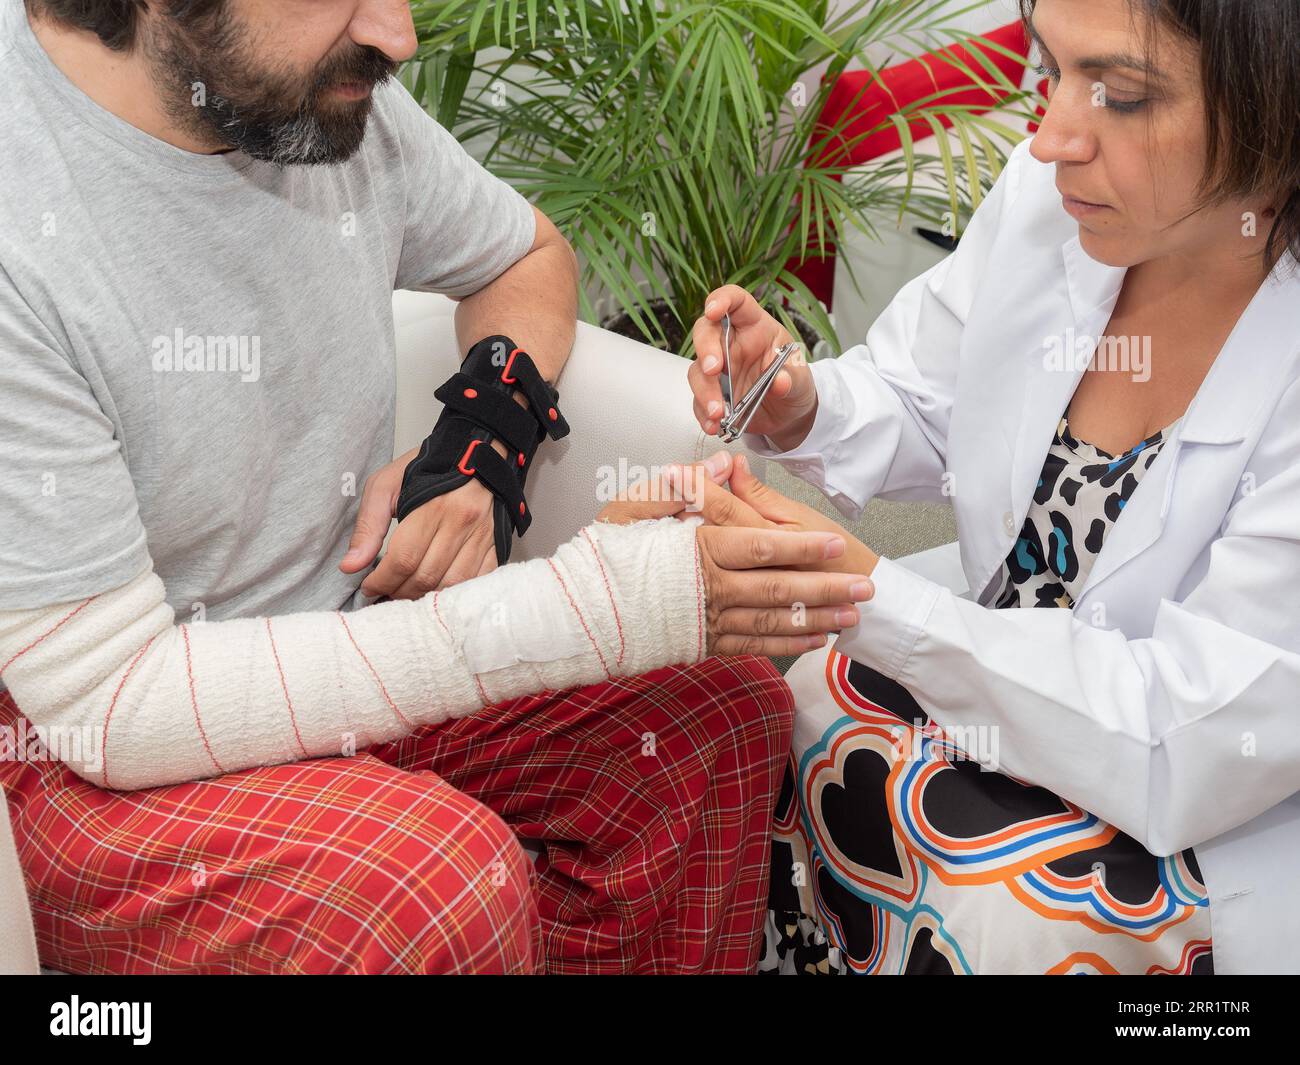 Dall'alto di infermiera femminile taglio unghie con tagliatubi per tagliare anonimi pazienti maschi con lesioni alle braccia in clinica medica Foto Stock